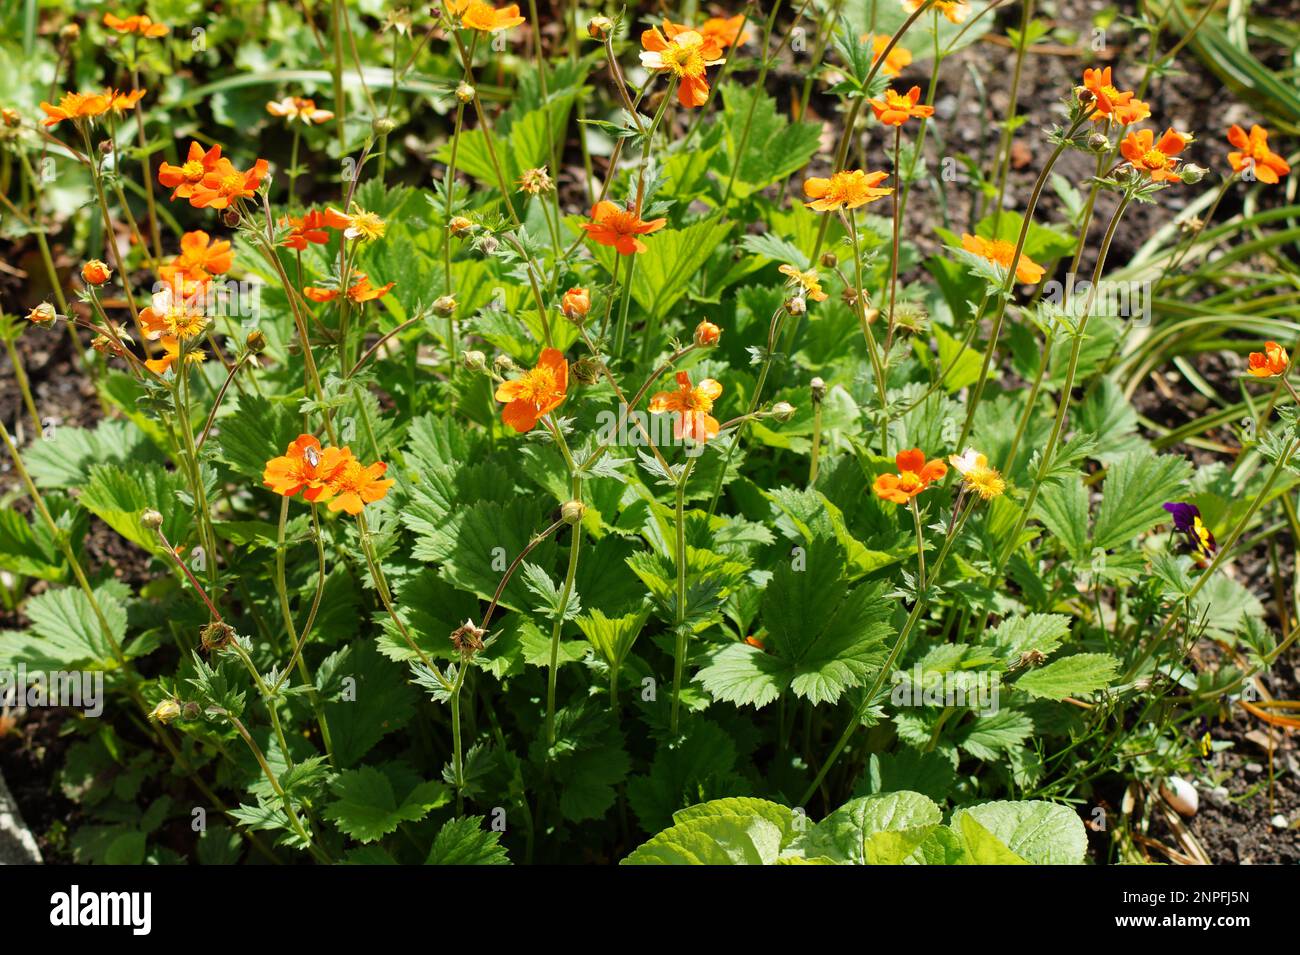 Radice di chiodo di garofano 'Borisii' ha fiori di arancio Foto Stock